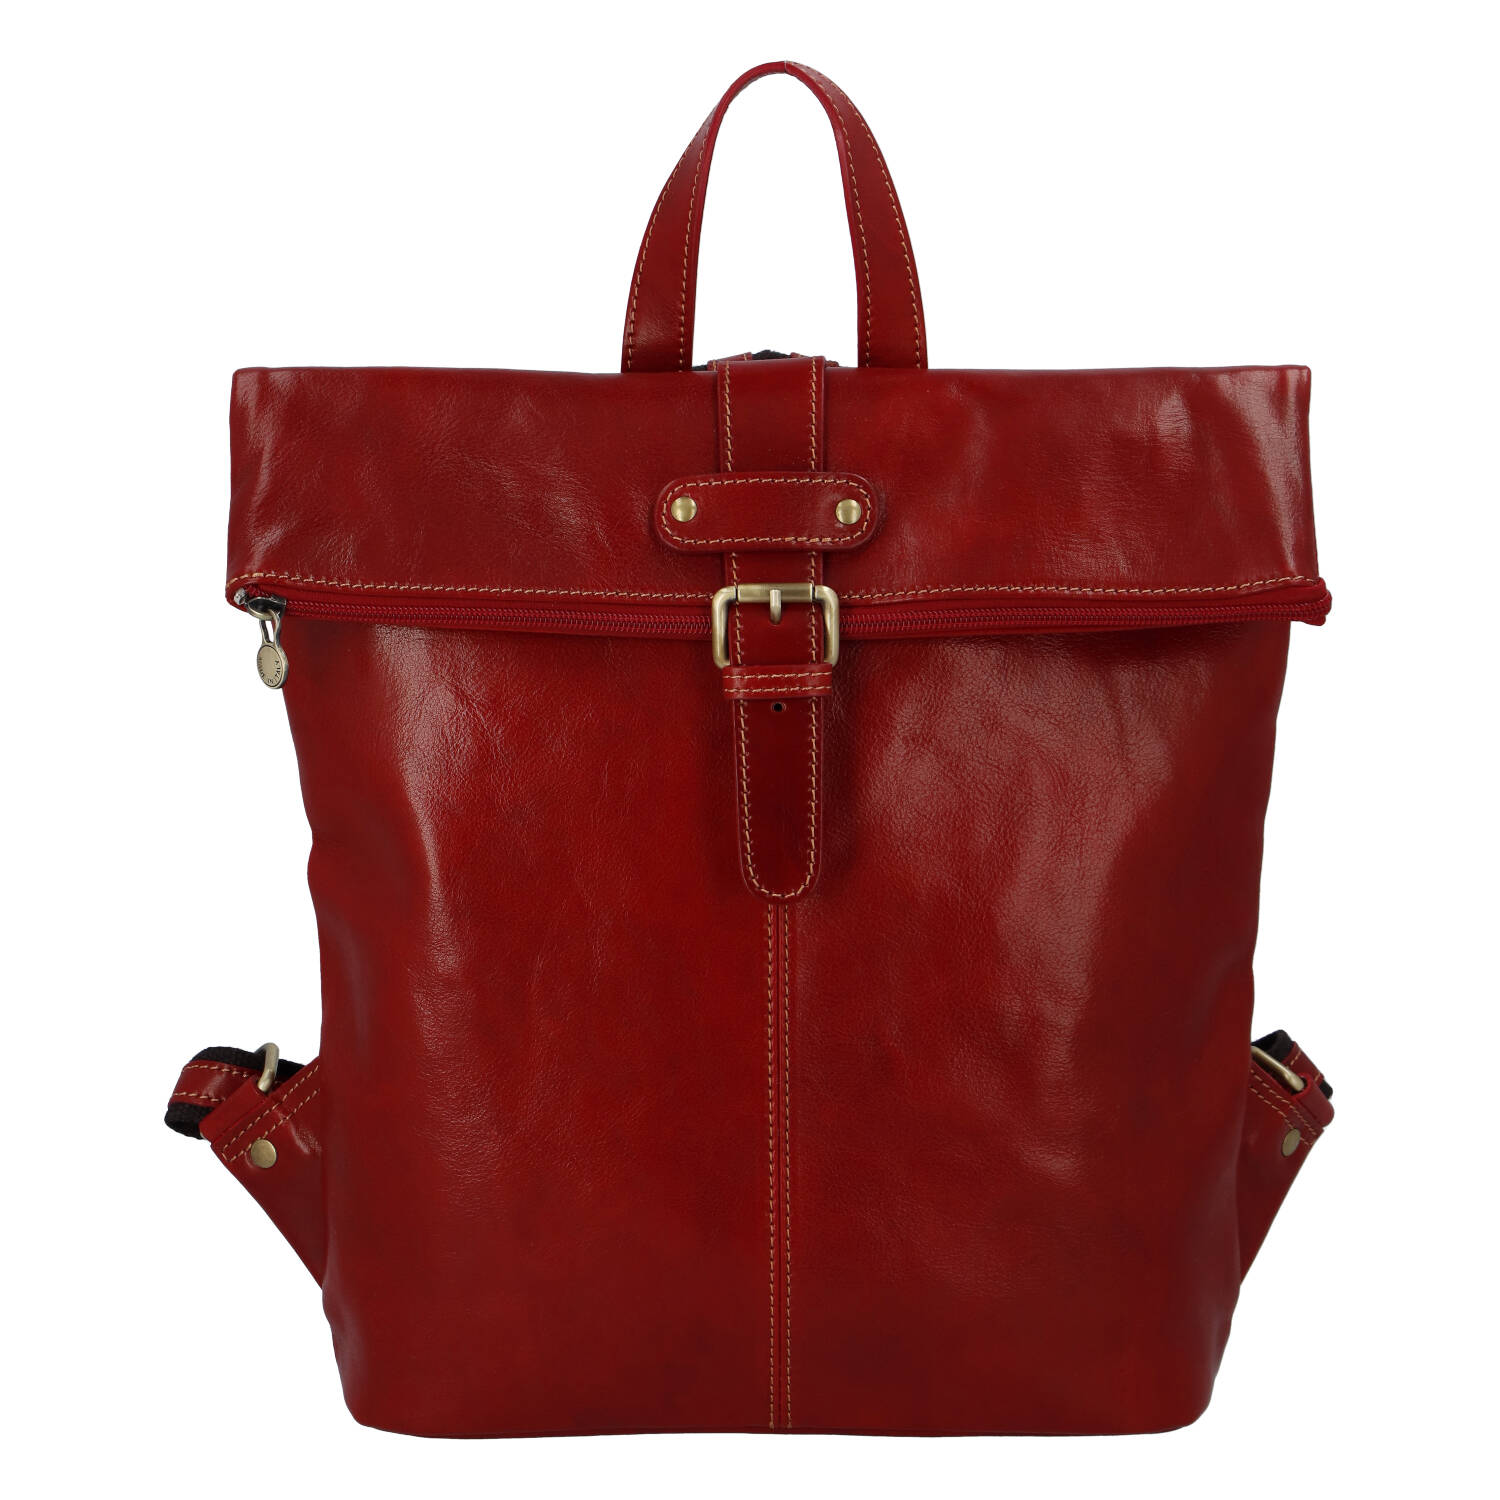 Prostorný kožený batoh pro dámy i pány Claire, červená